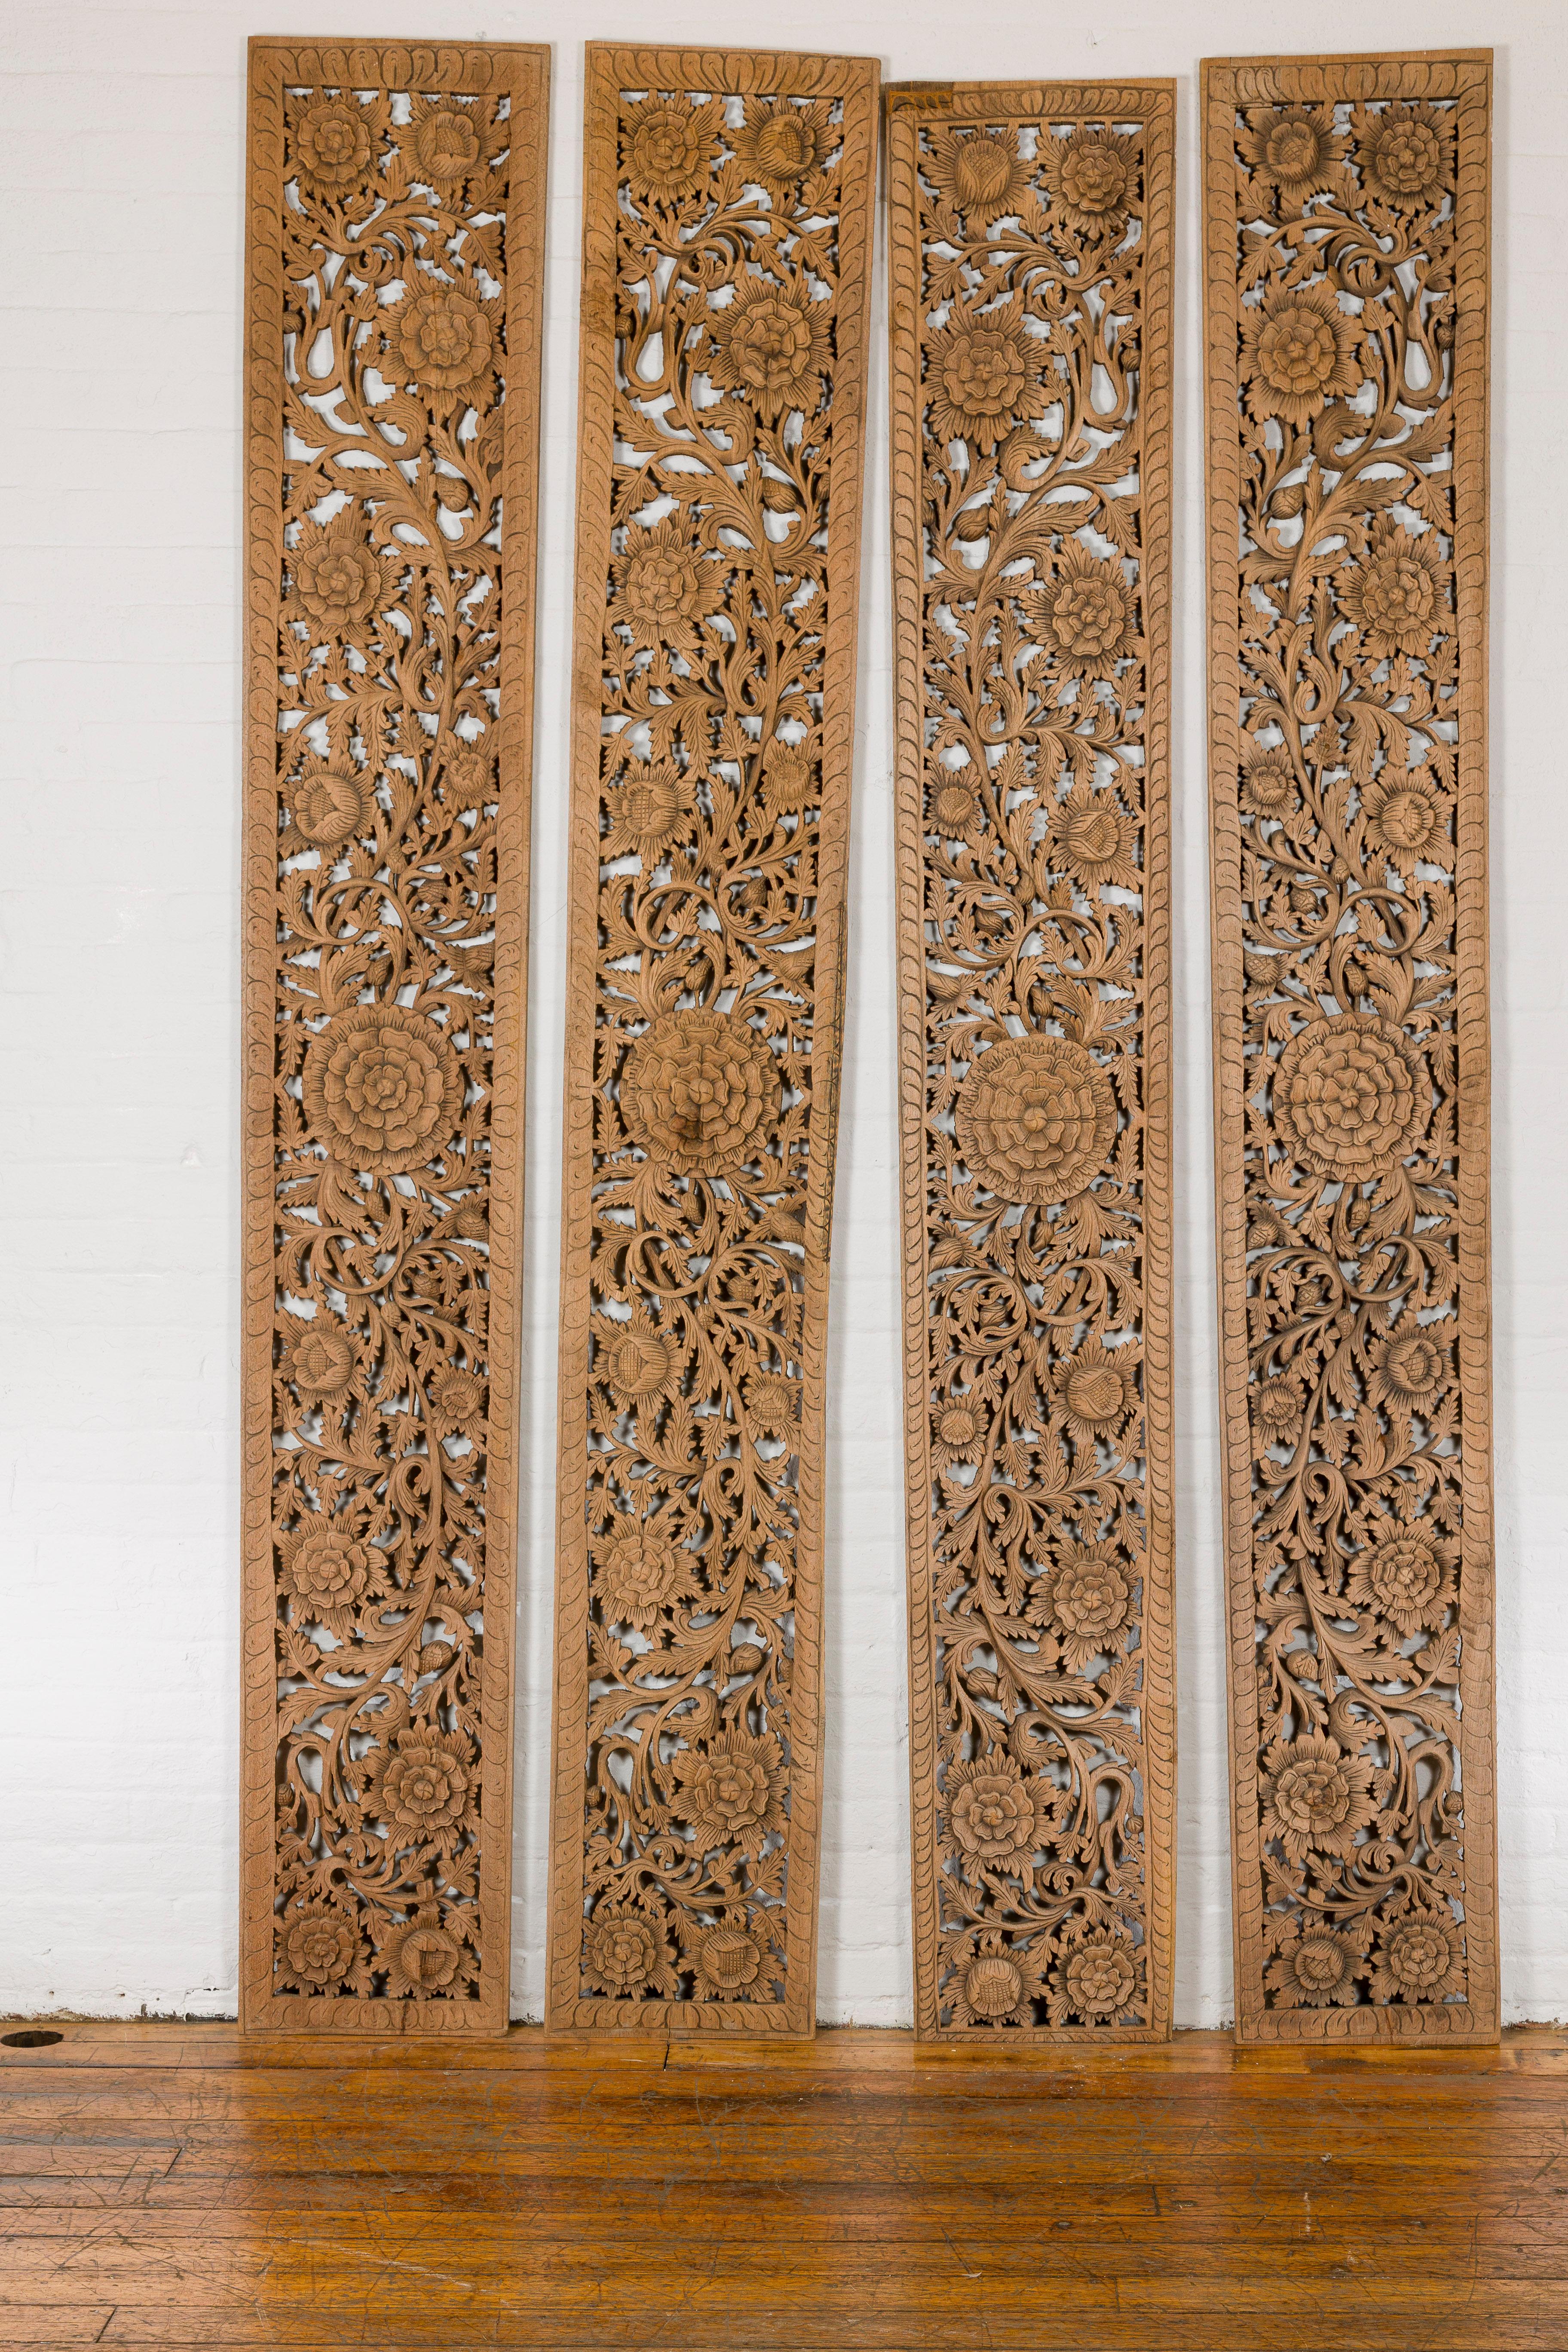 Ein Satz von vier geschnitzten architektonischen Holztafeln aus der Mitte des 20. Jahrhunderts mit großen Blumen und geschwungenem Blattwerk. Lassen Sie sich von der künstlerischen Komplexität dieser vier geschnitzten Holzpaneele aus der Mitte des